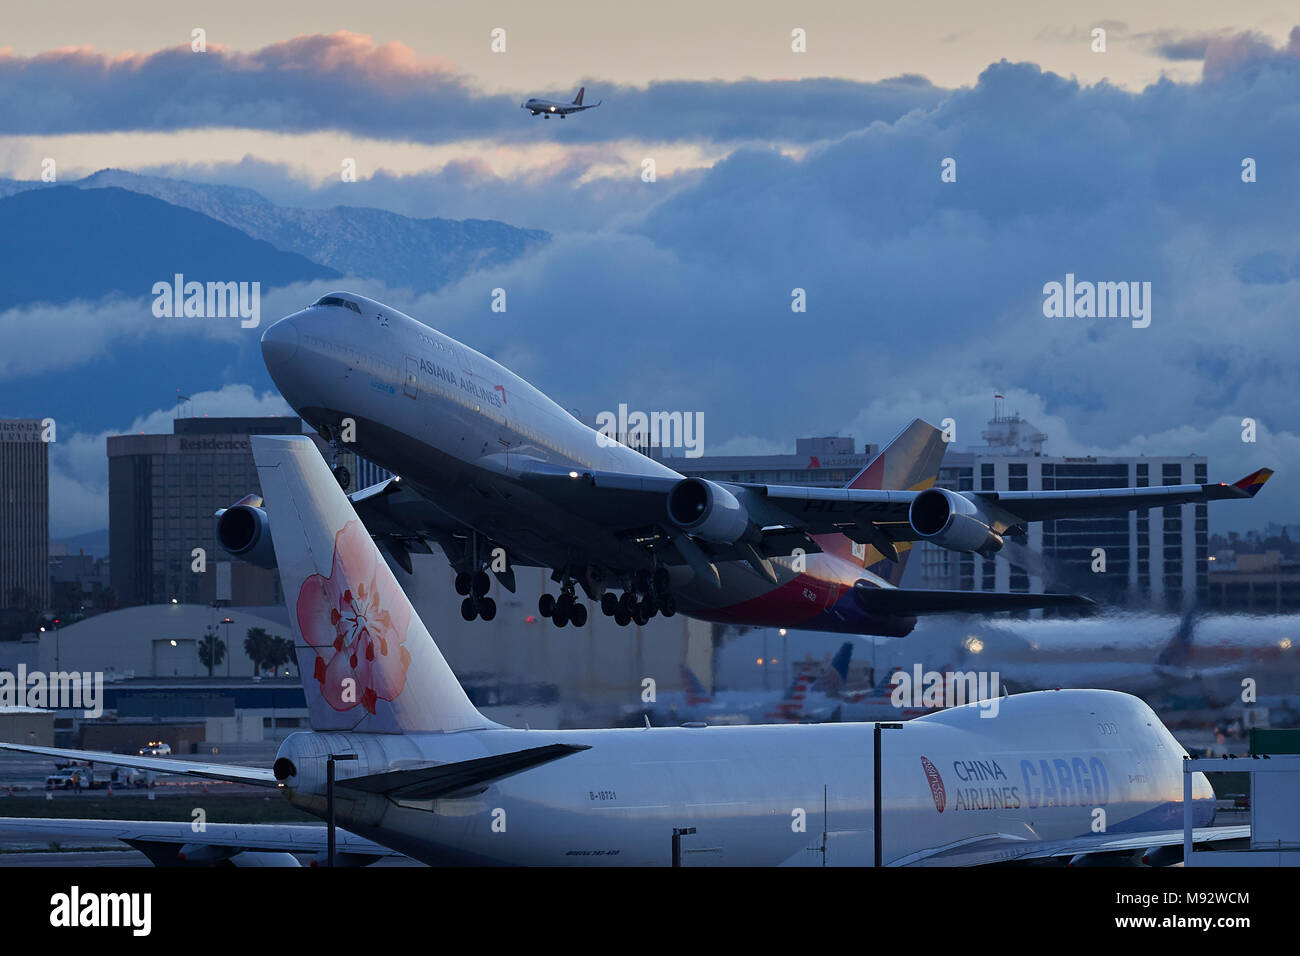 Asiana Airlines Boeing 747-400 Jet passagers décollant de l'Aéroport International de Los Angeles, LAX, à l'aube. Les nuages couvrant la ville derrière. Banque D'Images